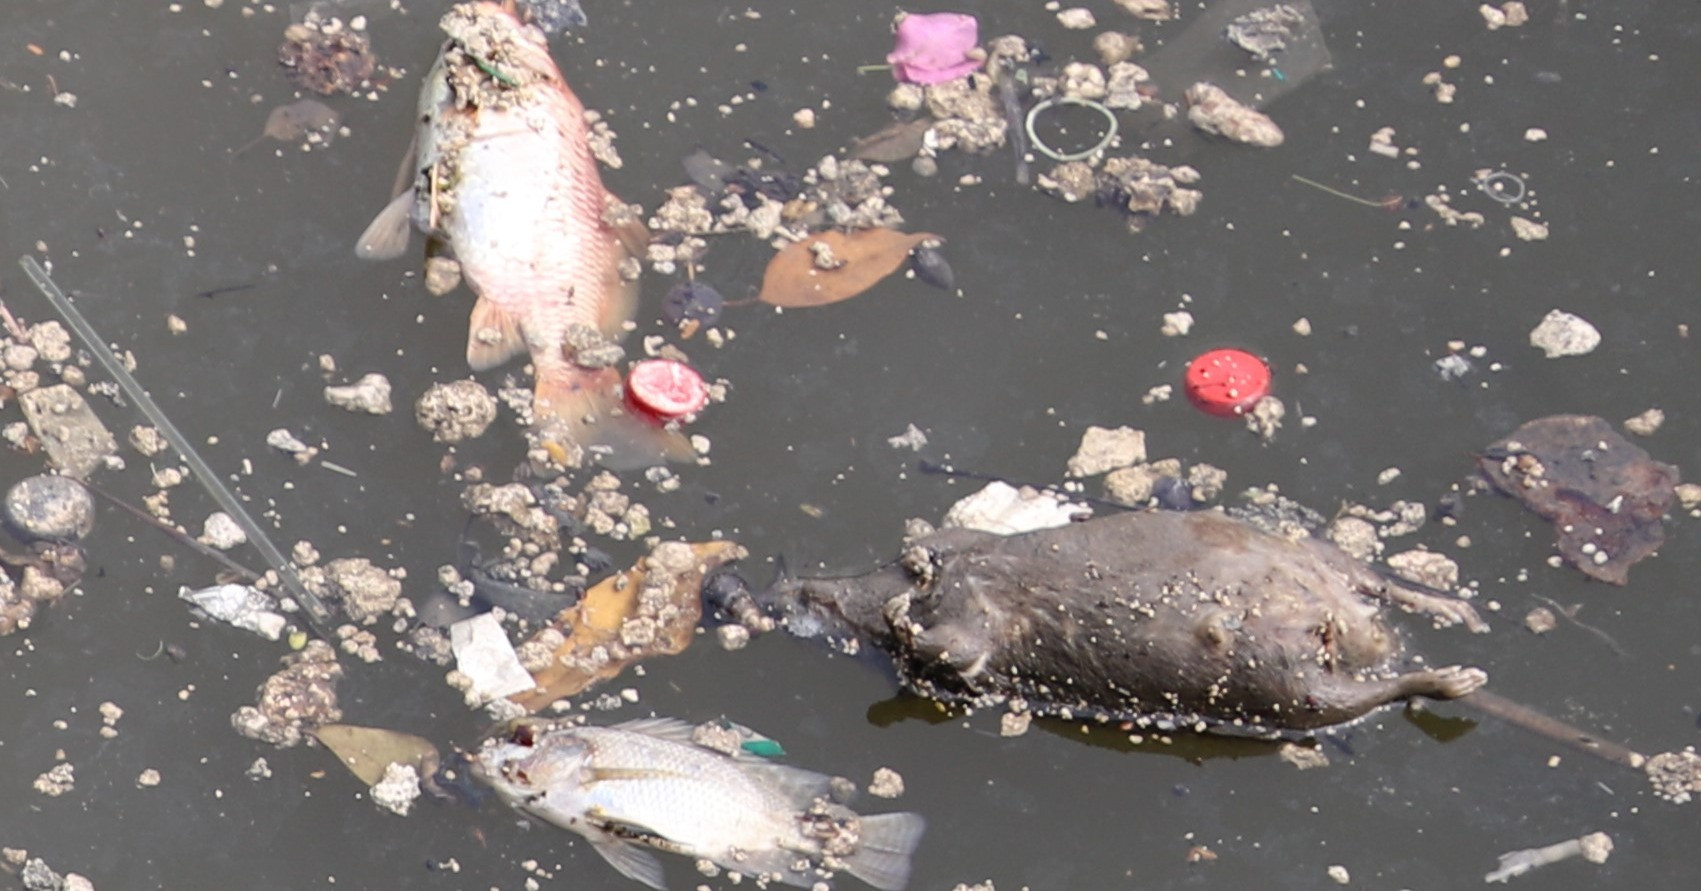 Cá chết trên kênh Nhiêu Lộc - Thị Nghè, người dân lo ngại nguồn nước ô nhiễm